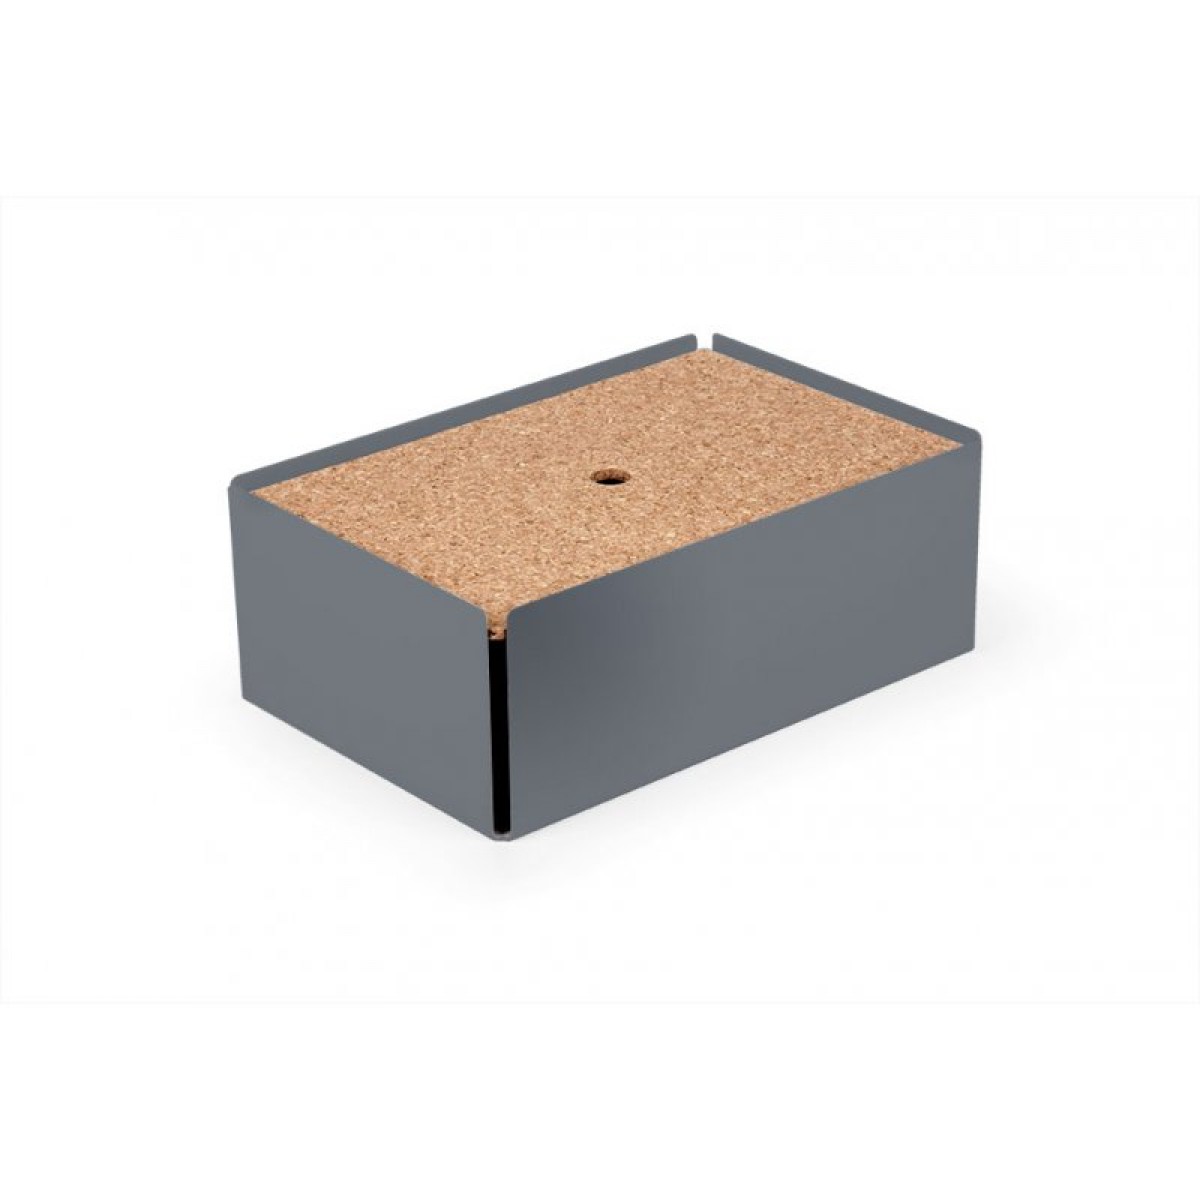 Konstantin Slawinski
CHARGE-BOX Kabelbox (fehgrau)